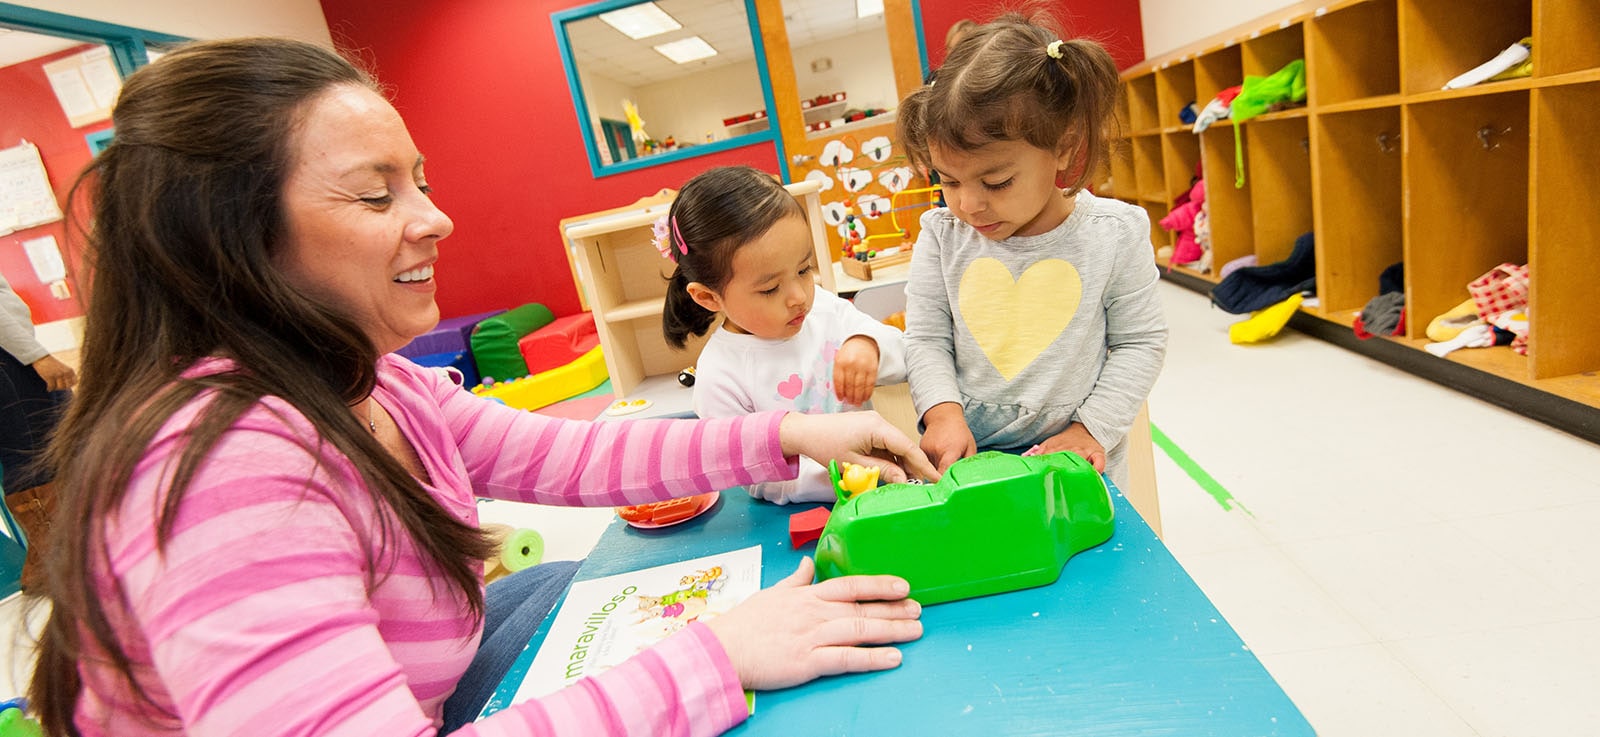 Niñas juegan con juguetes en el salón de clases mientras que una educadora de primera infancia observa, ayuda y sonríe.